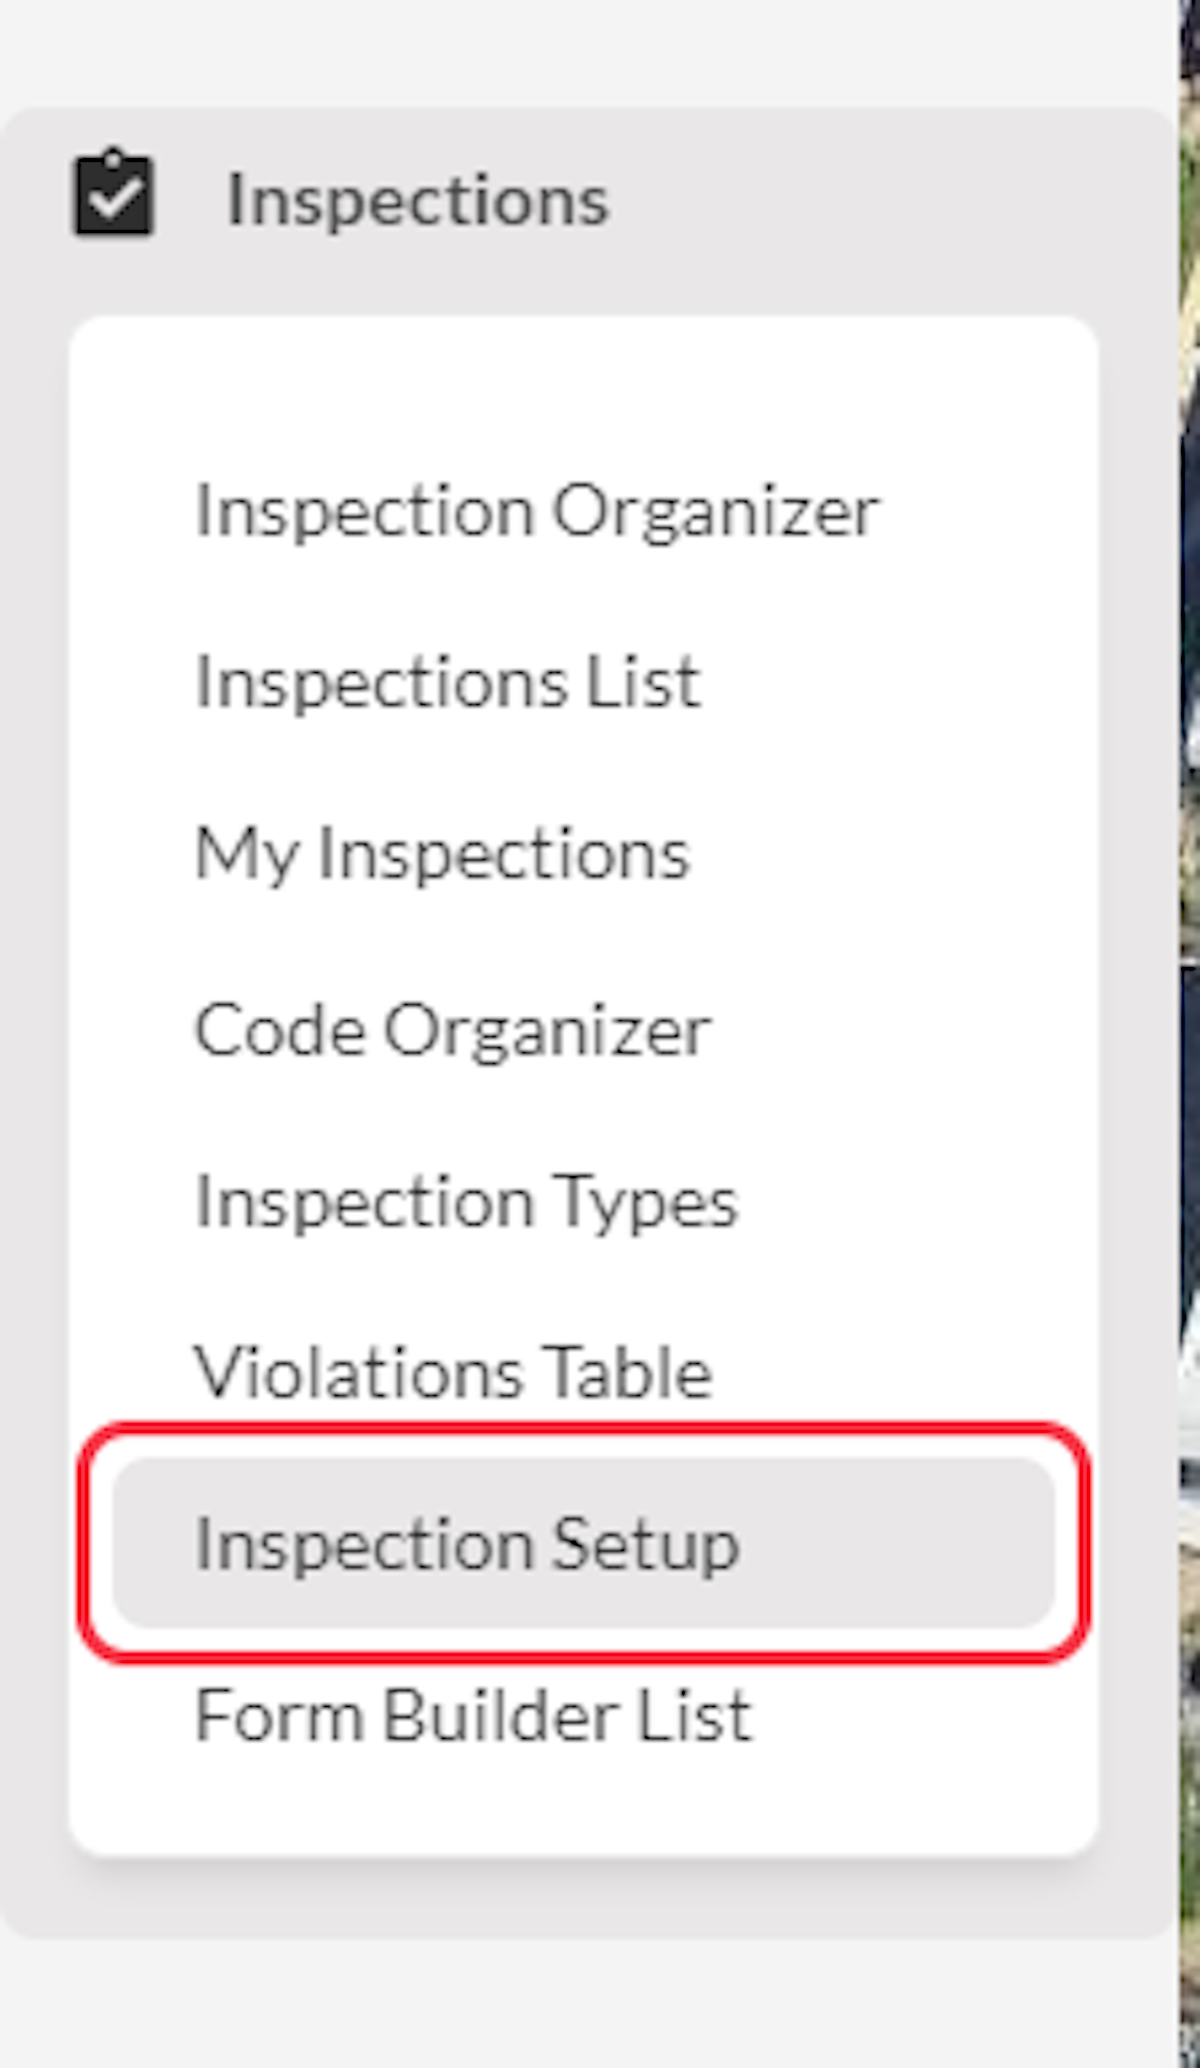 Click on Inspection Setup